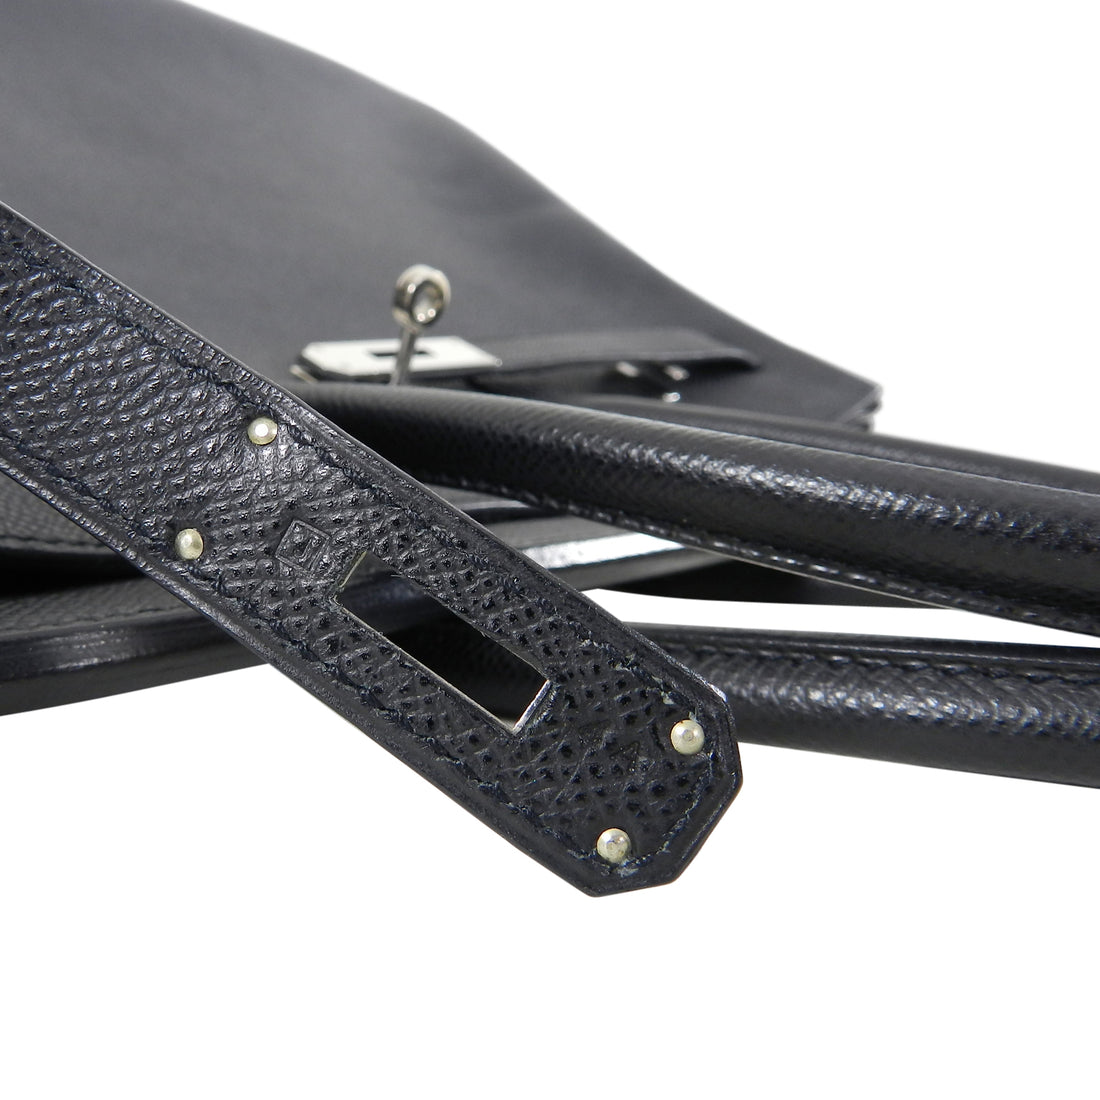 Hermès Birkin 35 Noir (Black) Epsom Palladium Hardware PHW — The